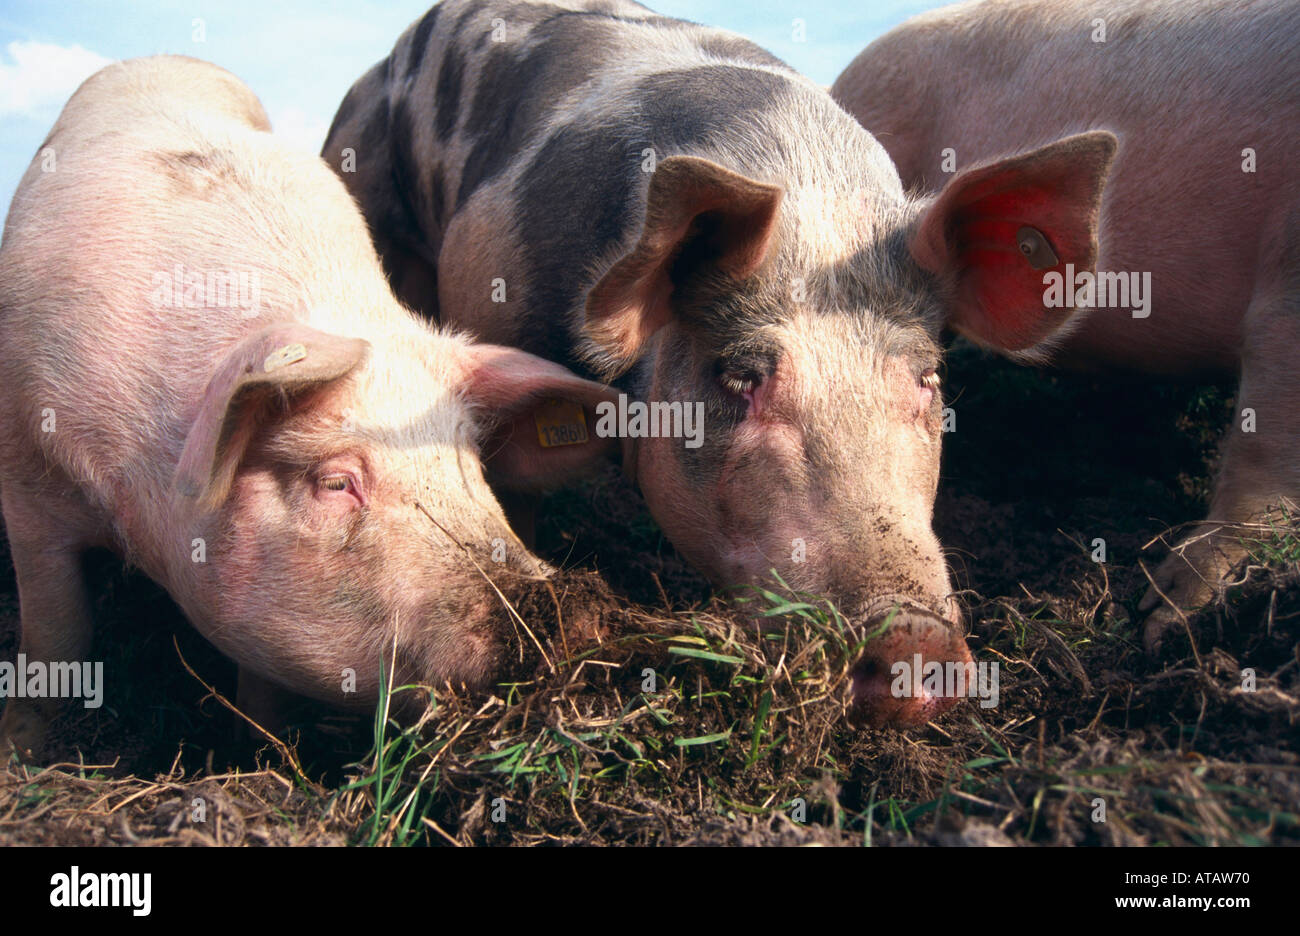 Hausschweine pigs Stock Photo